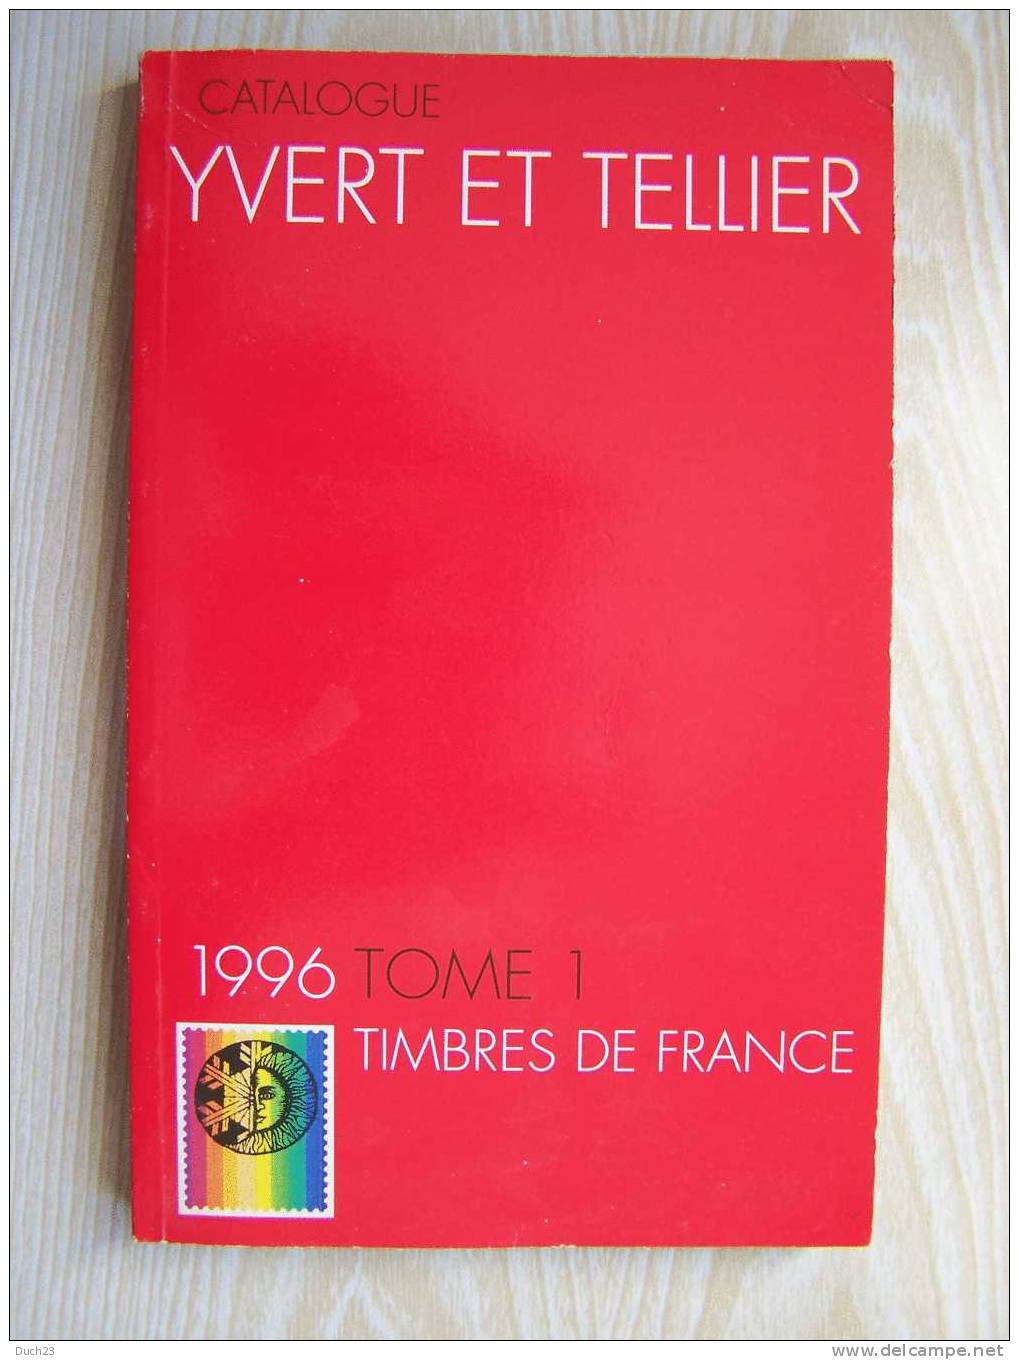 CATALOGUE DE COTATION YVERT ET TELLIER ANNEE 1996 TOME 1   TRES BON ETAT   REF CD - Francia